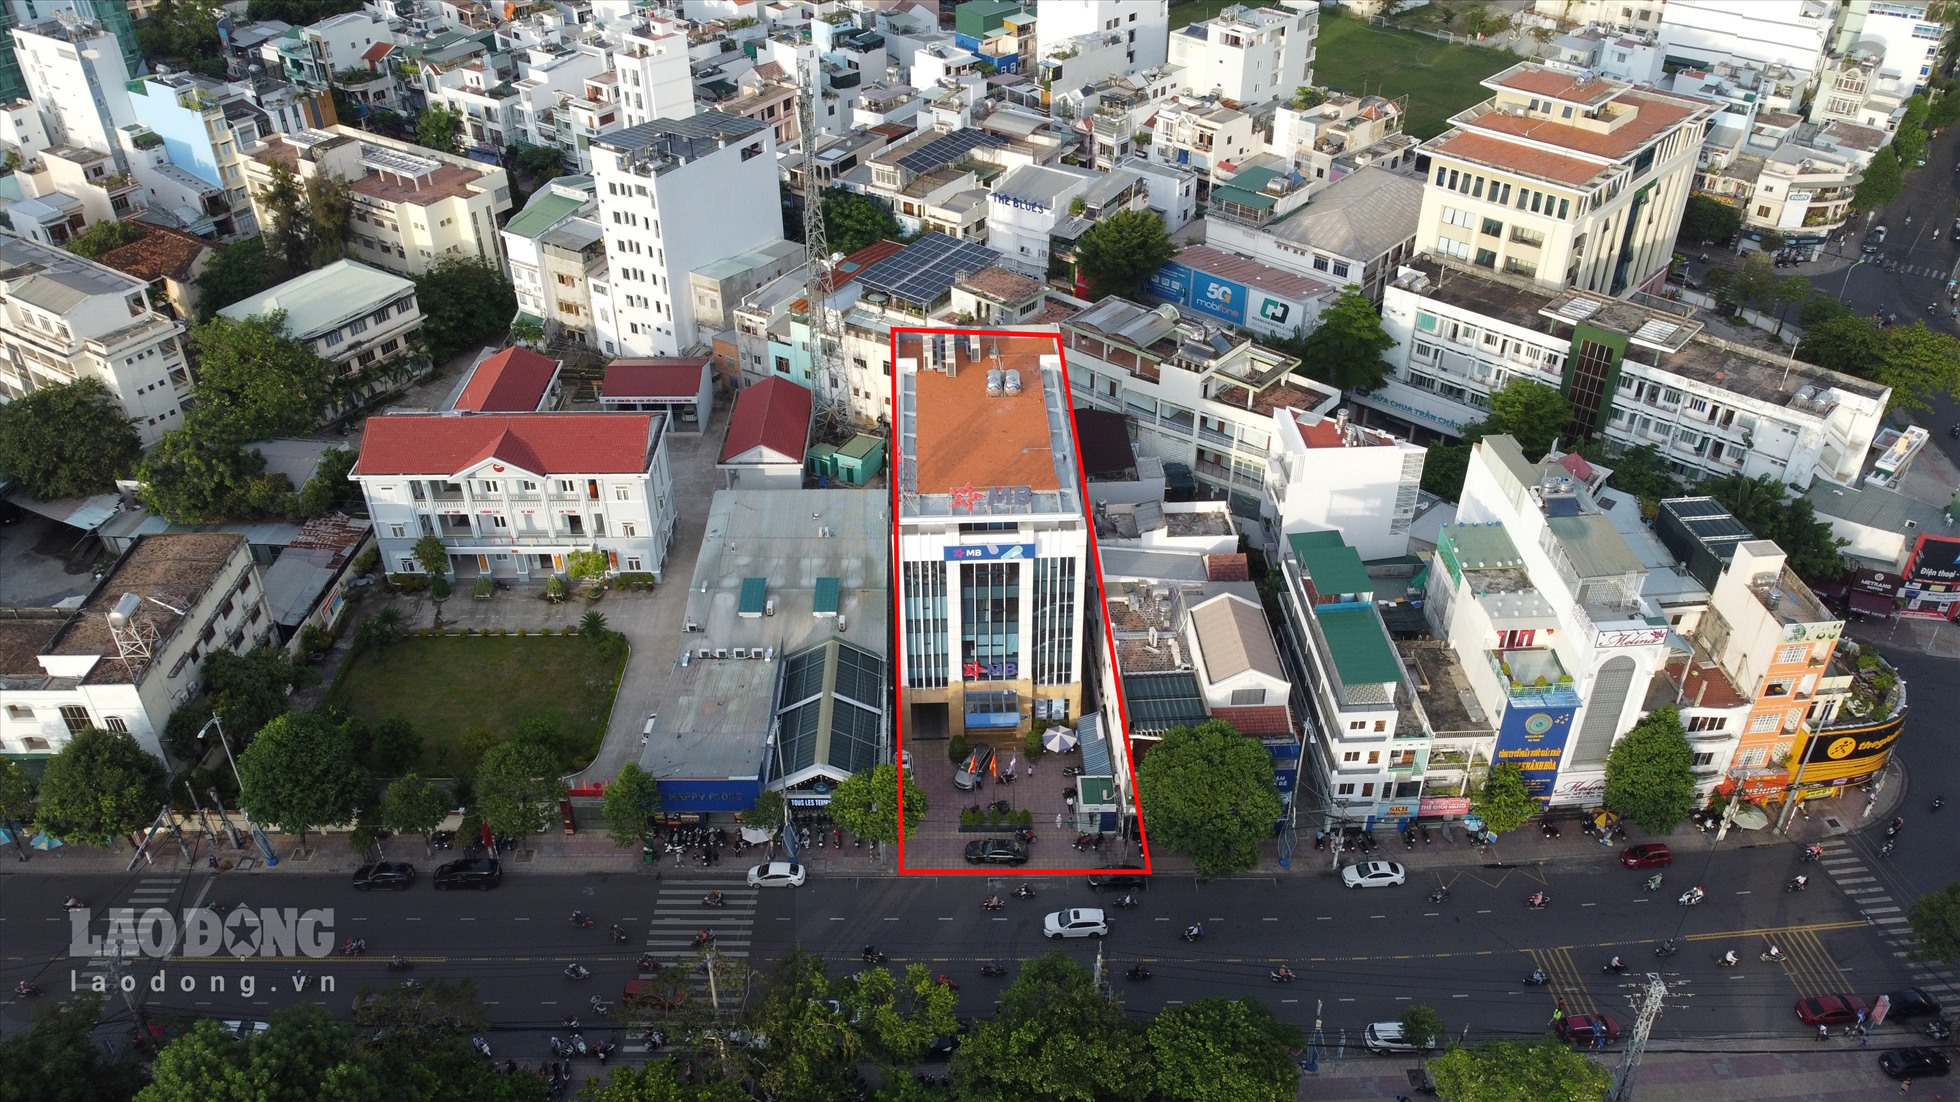 Trụ sở Ngân hàng TMCP Quân đội tại số 9 đường Lê Thánh Tôn (4.772m2). Công trình này được thực hiện theo Hợp đồng liên kết đầu tư – xây dựng giữa Bộ CHQS tỉnh và Ngân hàng CP Quân đội ký  vào năm 2013.